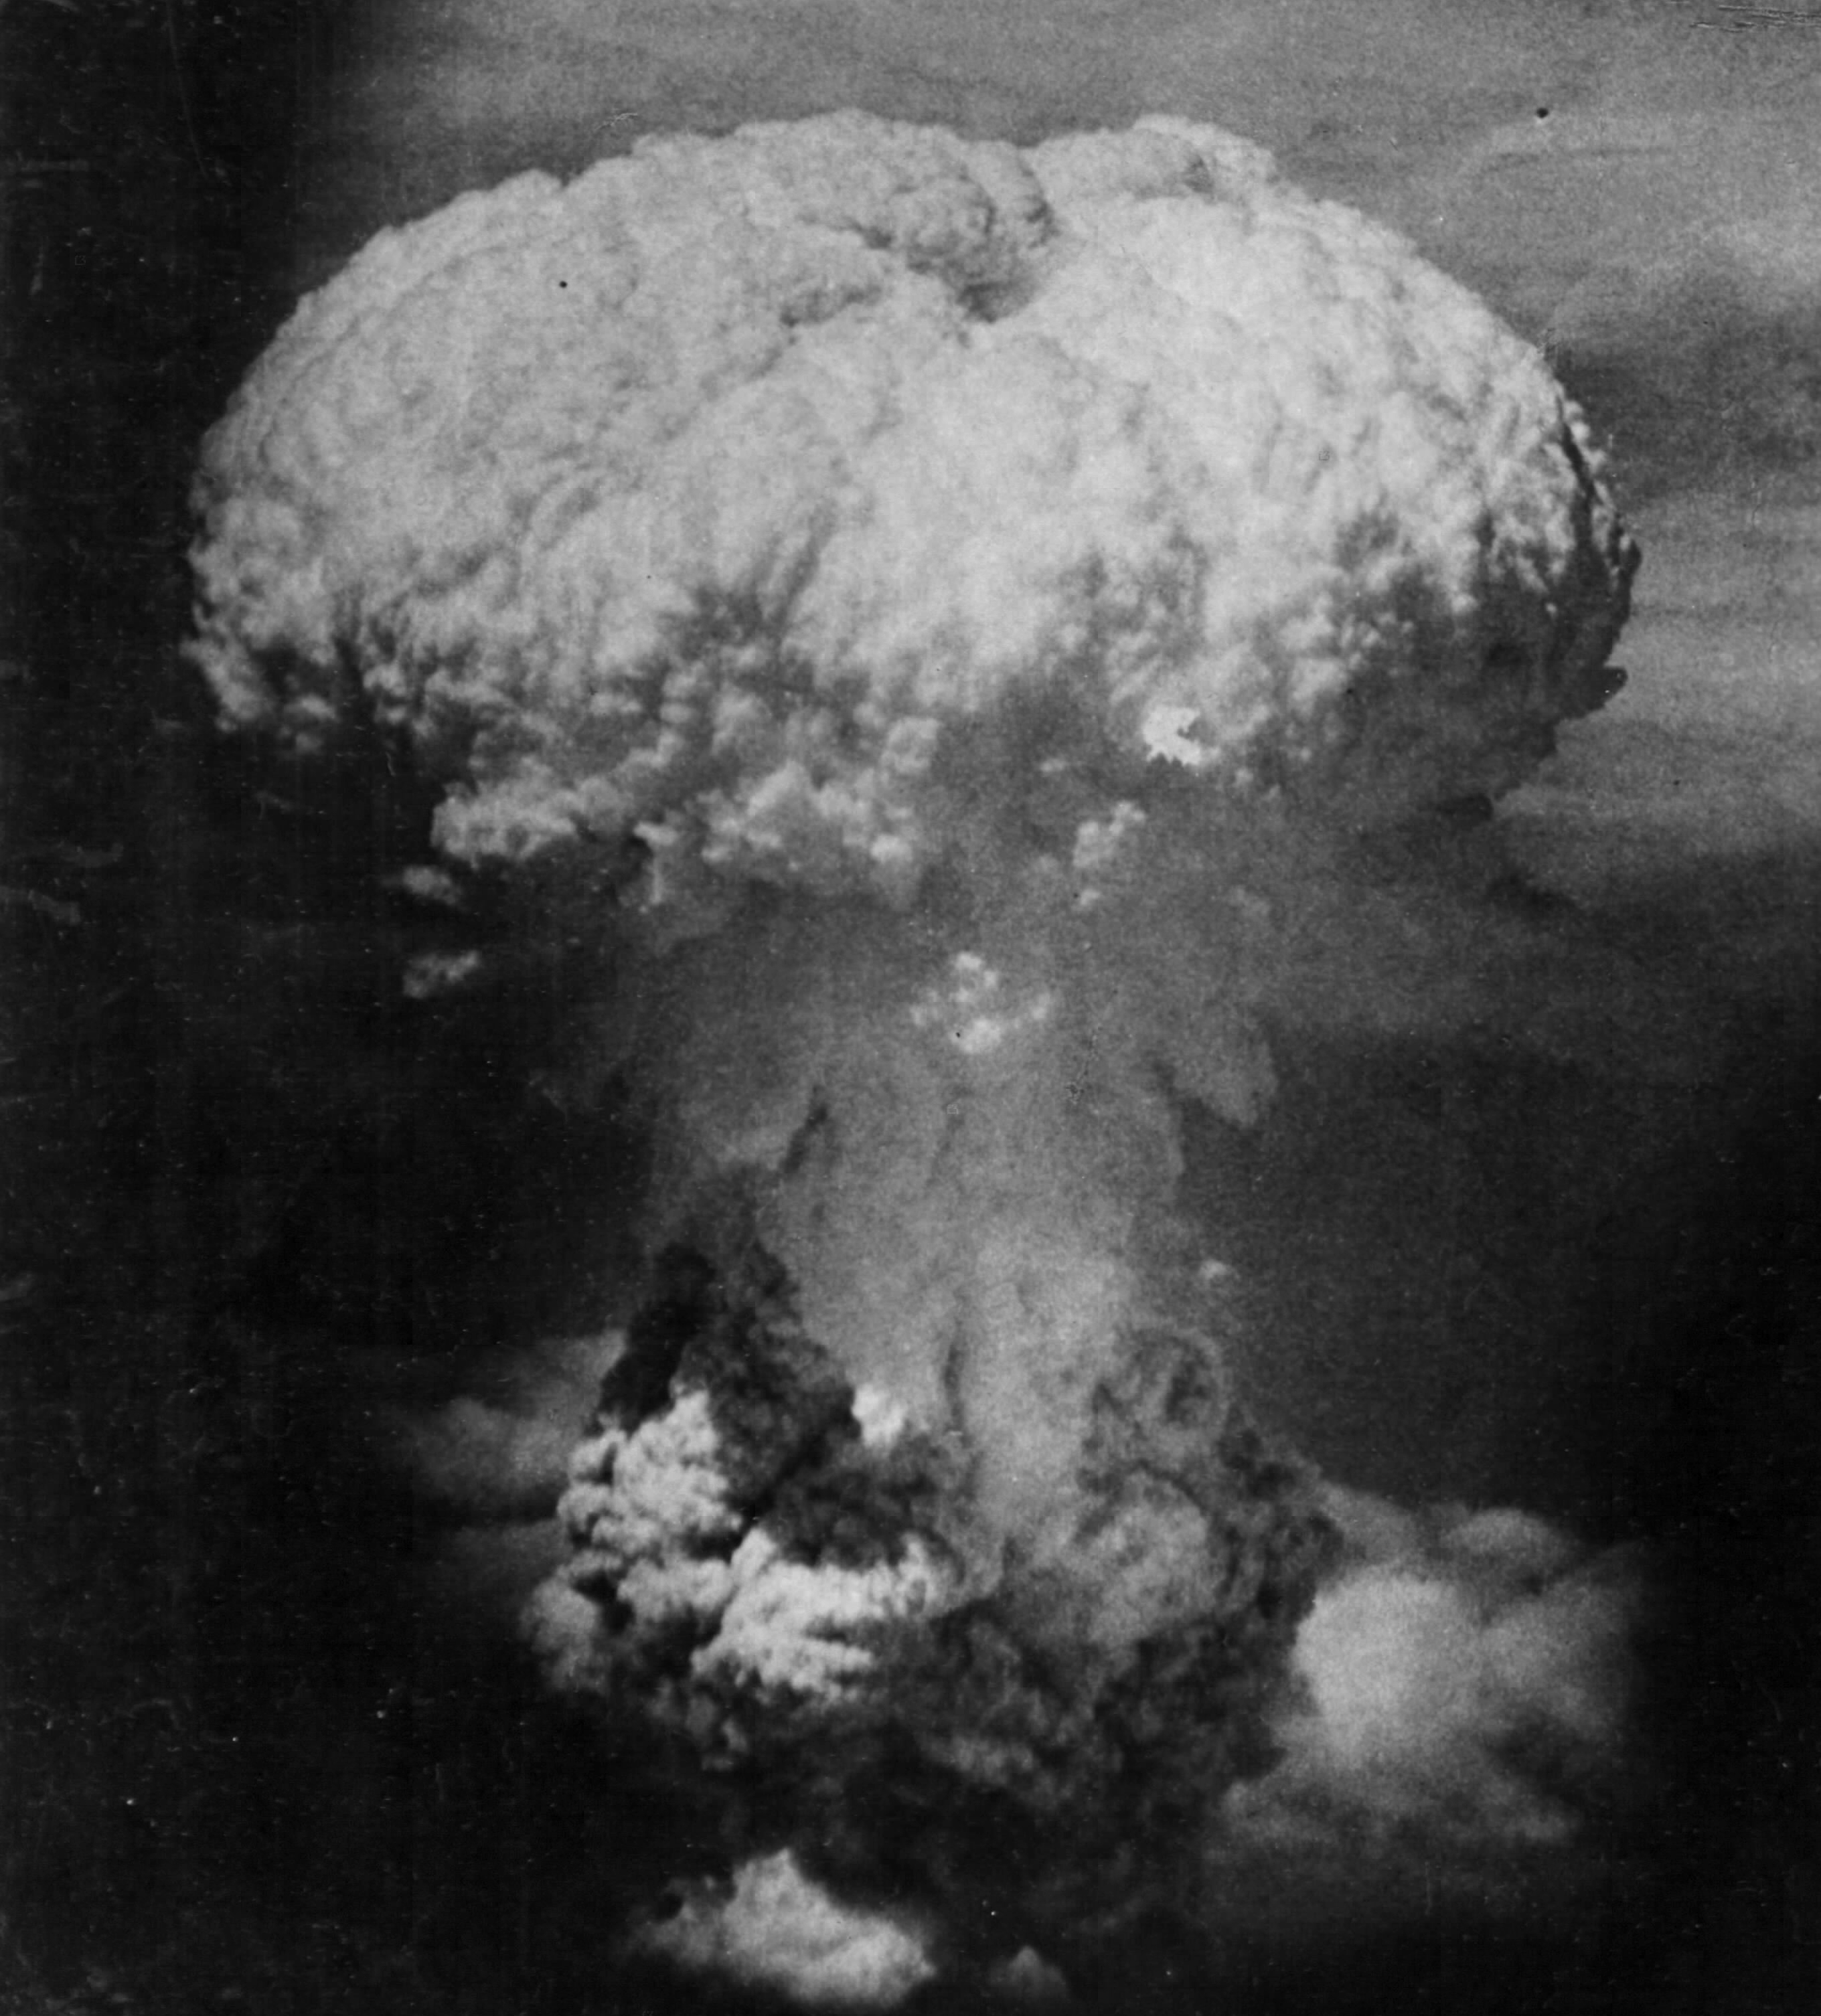 Америка сбросила бомбы на японию. Хиросима и Нагасаки атомная бомбардировка. Хиросима Нагасаки ядерный взрыв. Япония 1945 Хиросима и Нагасаки. Атомная бомба Япония 1945.